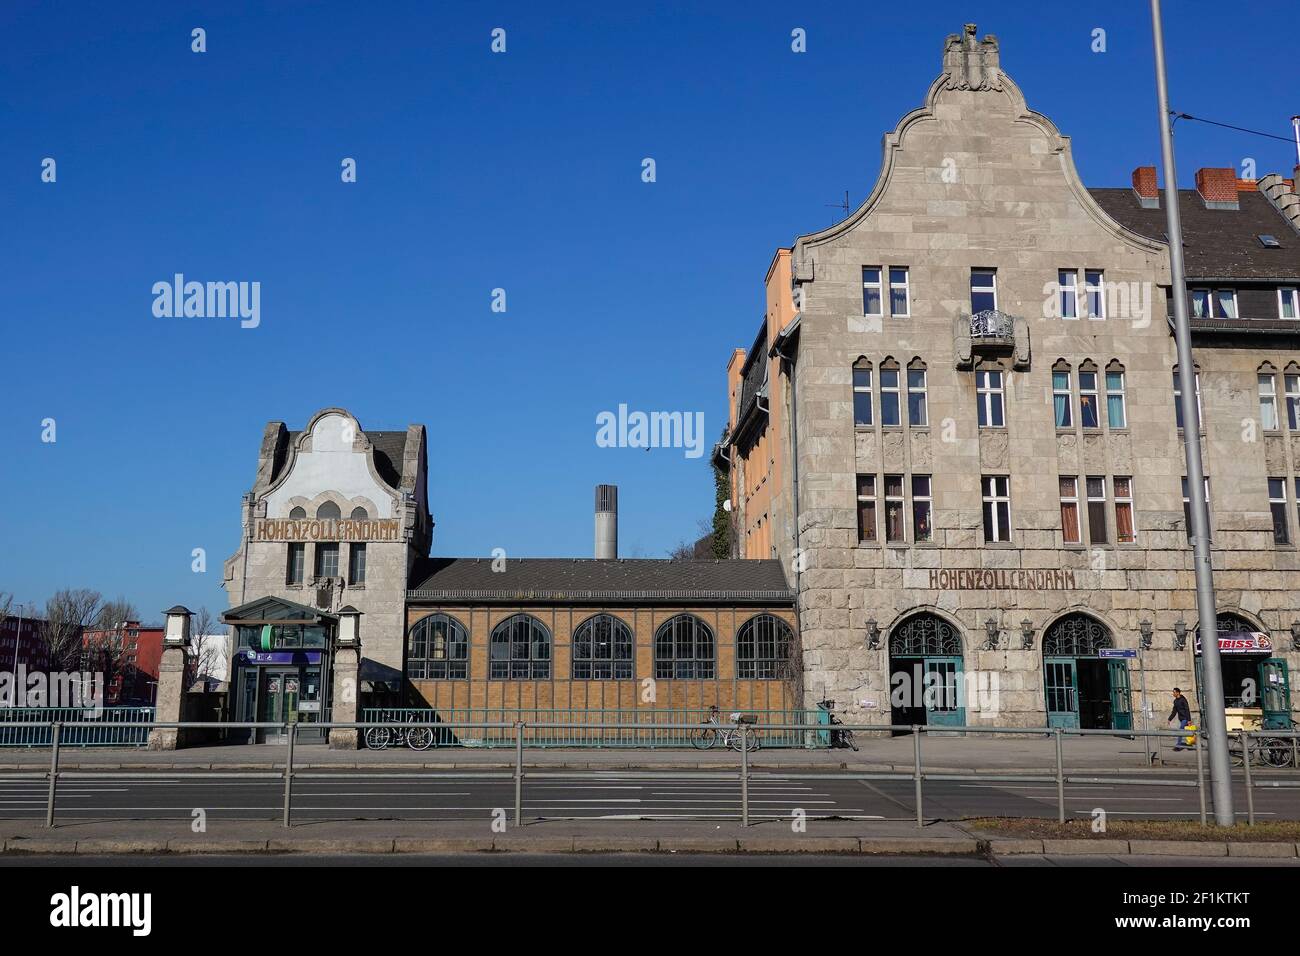 S-Bahnhof, Hohenzollerndamm, Wilmersdorf, Berlin, Deutschland Stock Photo